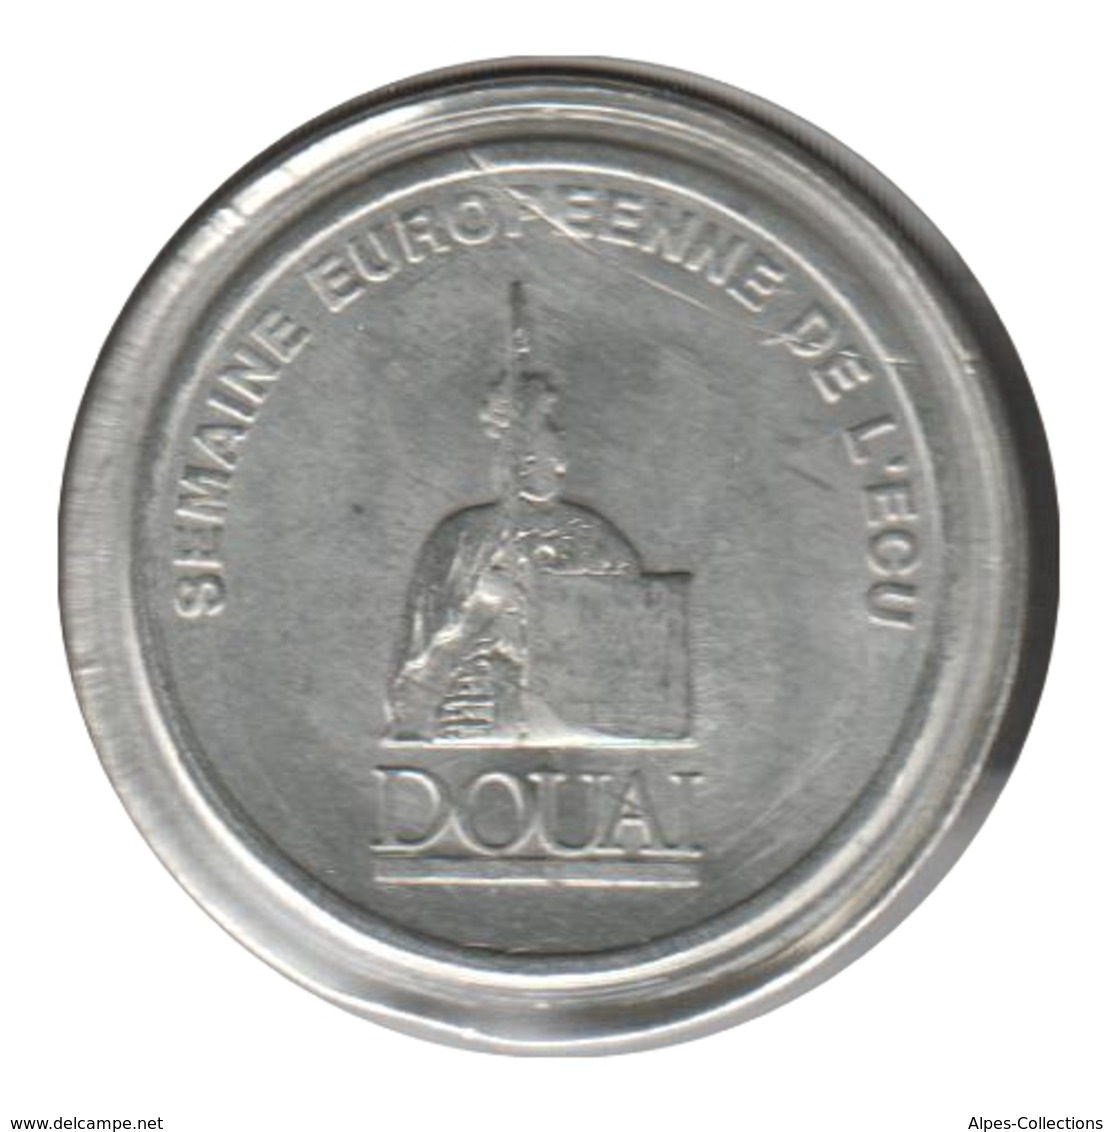 DOUAI - EC0010.5 - 1 ECU DES VILLES - Réf: NR - 1991 - Euros Des Villes